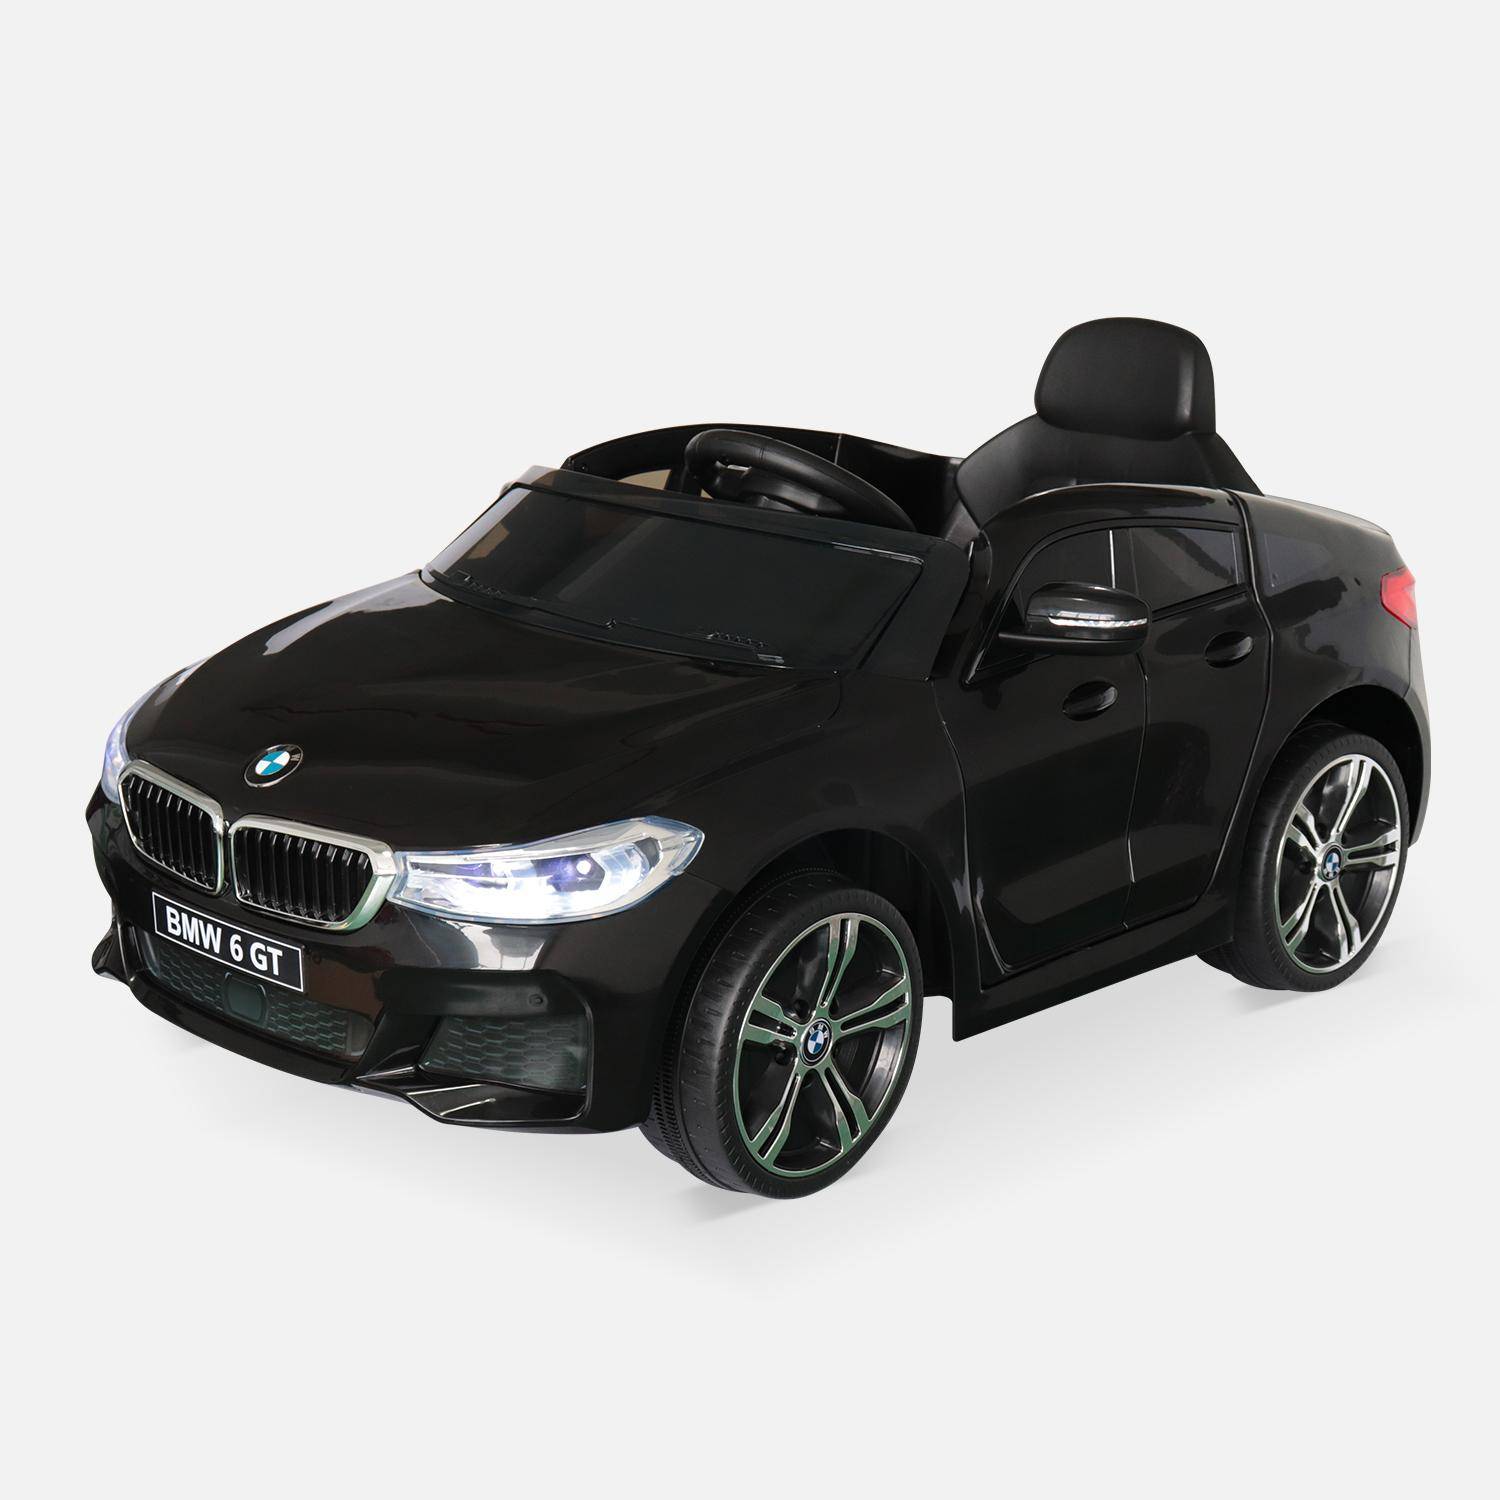 BMW GT6 Gran Turismo negro, coche eléctrico 12V, 1 plaza, descapotable para niños con autorradio y mando a distancia Photo2